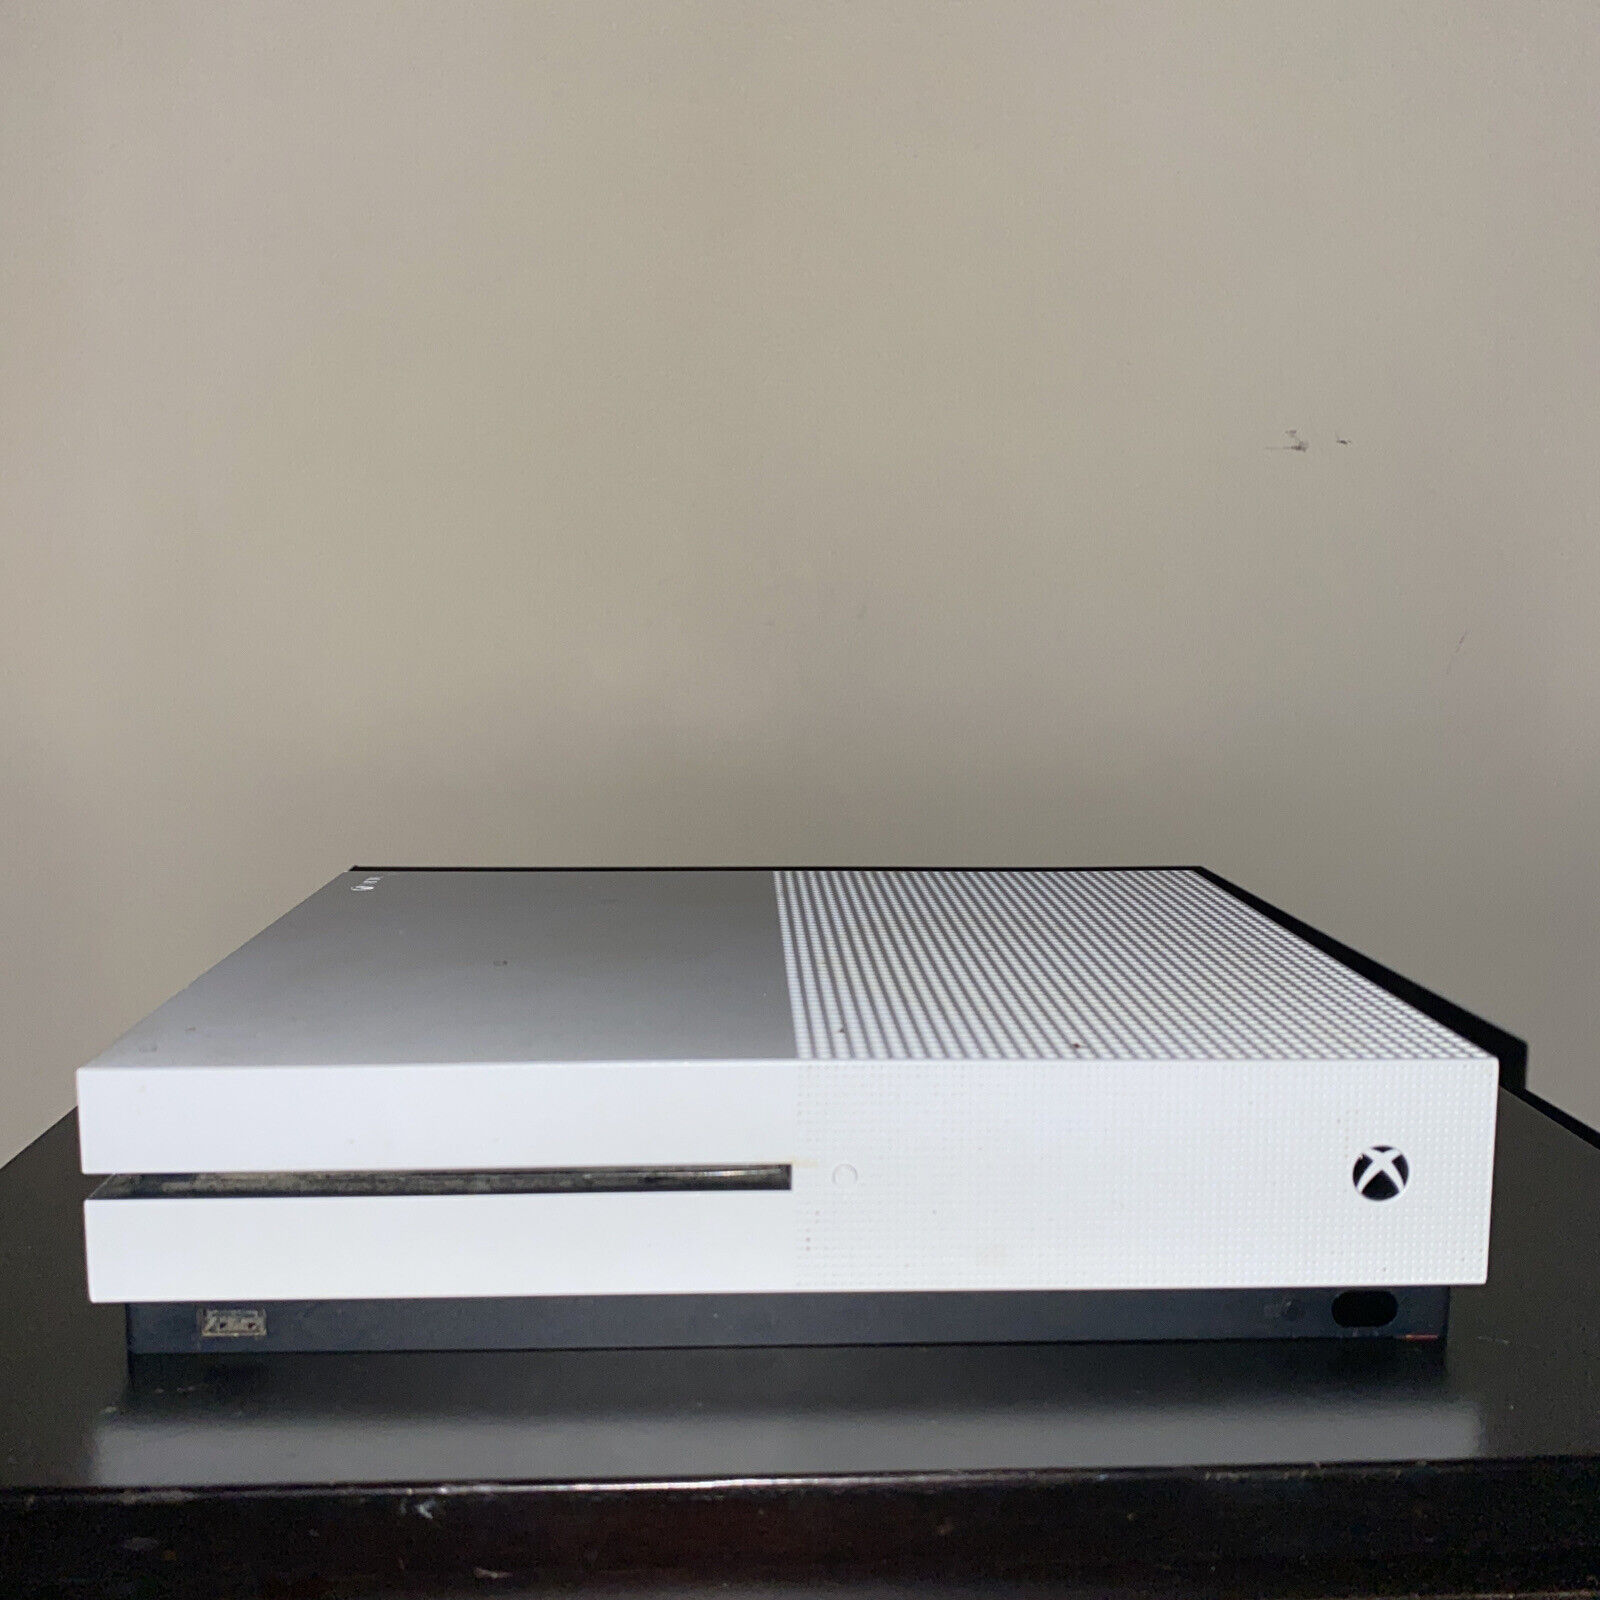 Microsoft Xbox One S 500GB Video Game Console - White (ZQ9-00001 